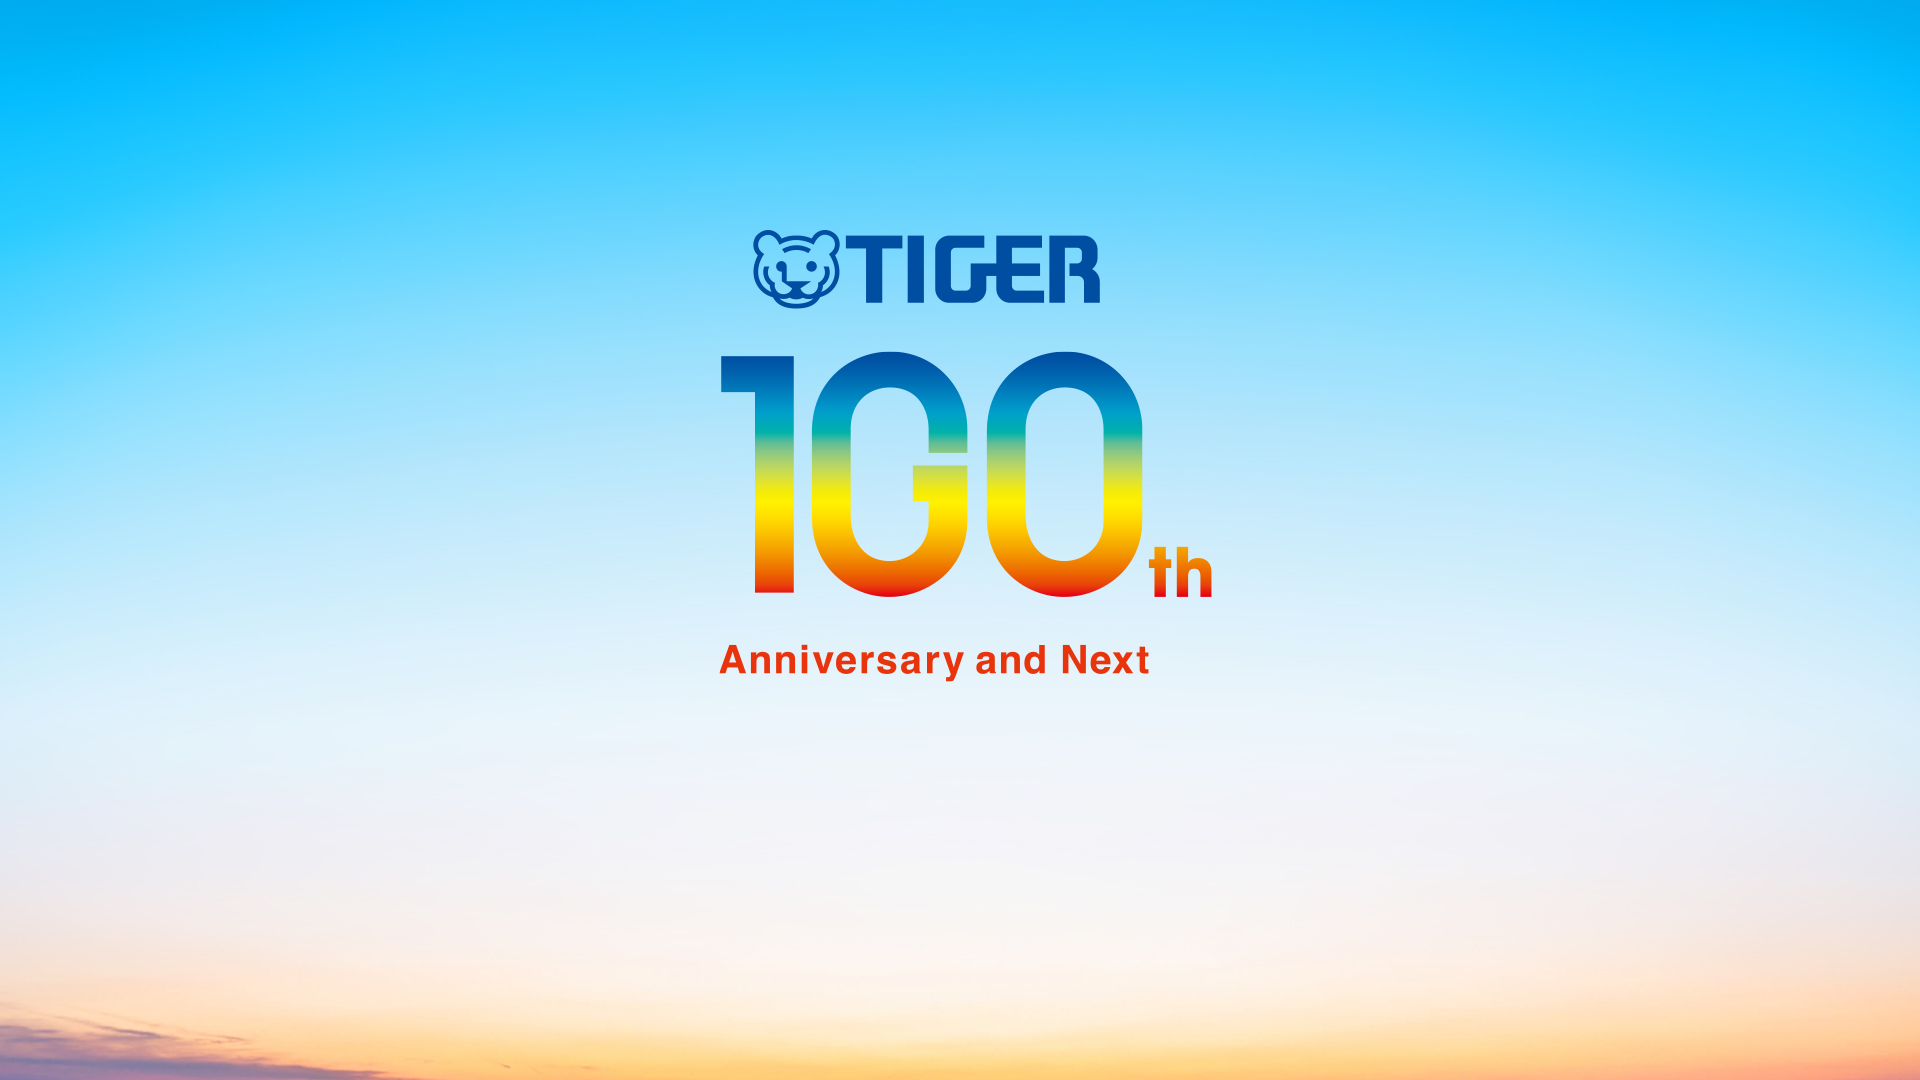 Tiger’s 100th Anniversary